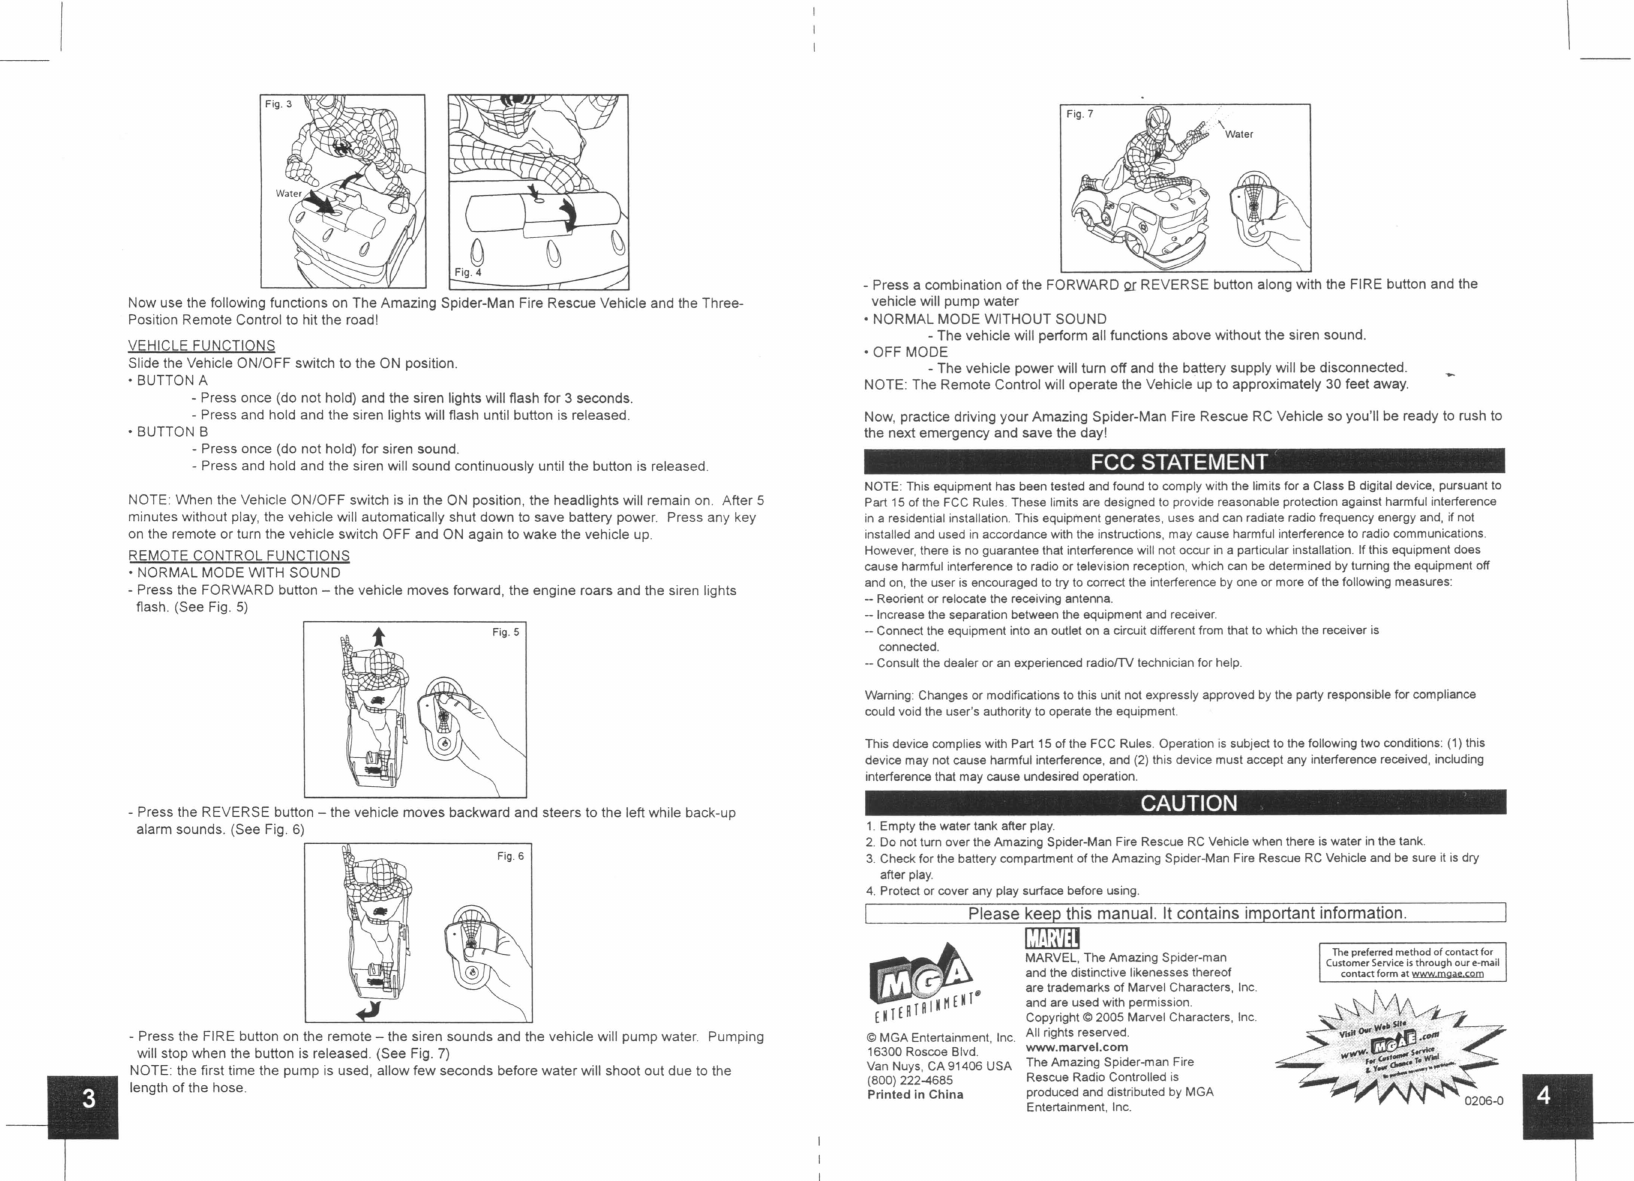 MGA Entertainment 322245 RC Car User Manual